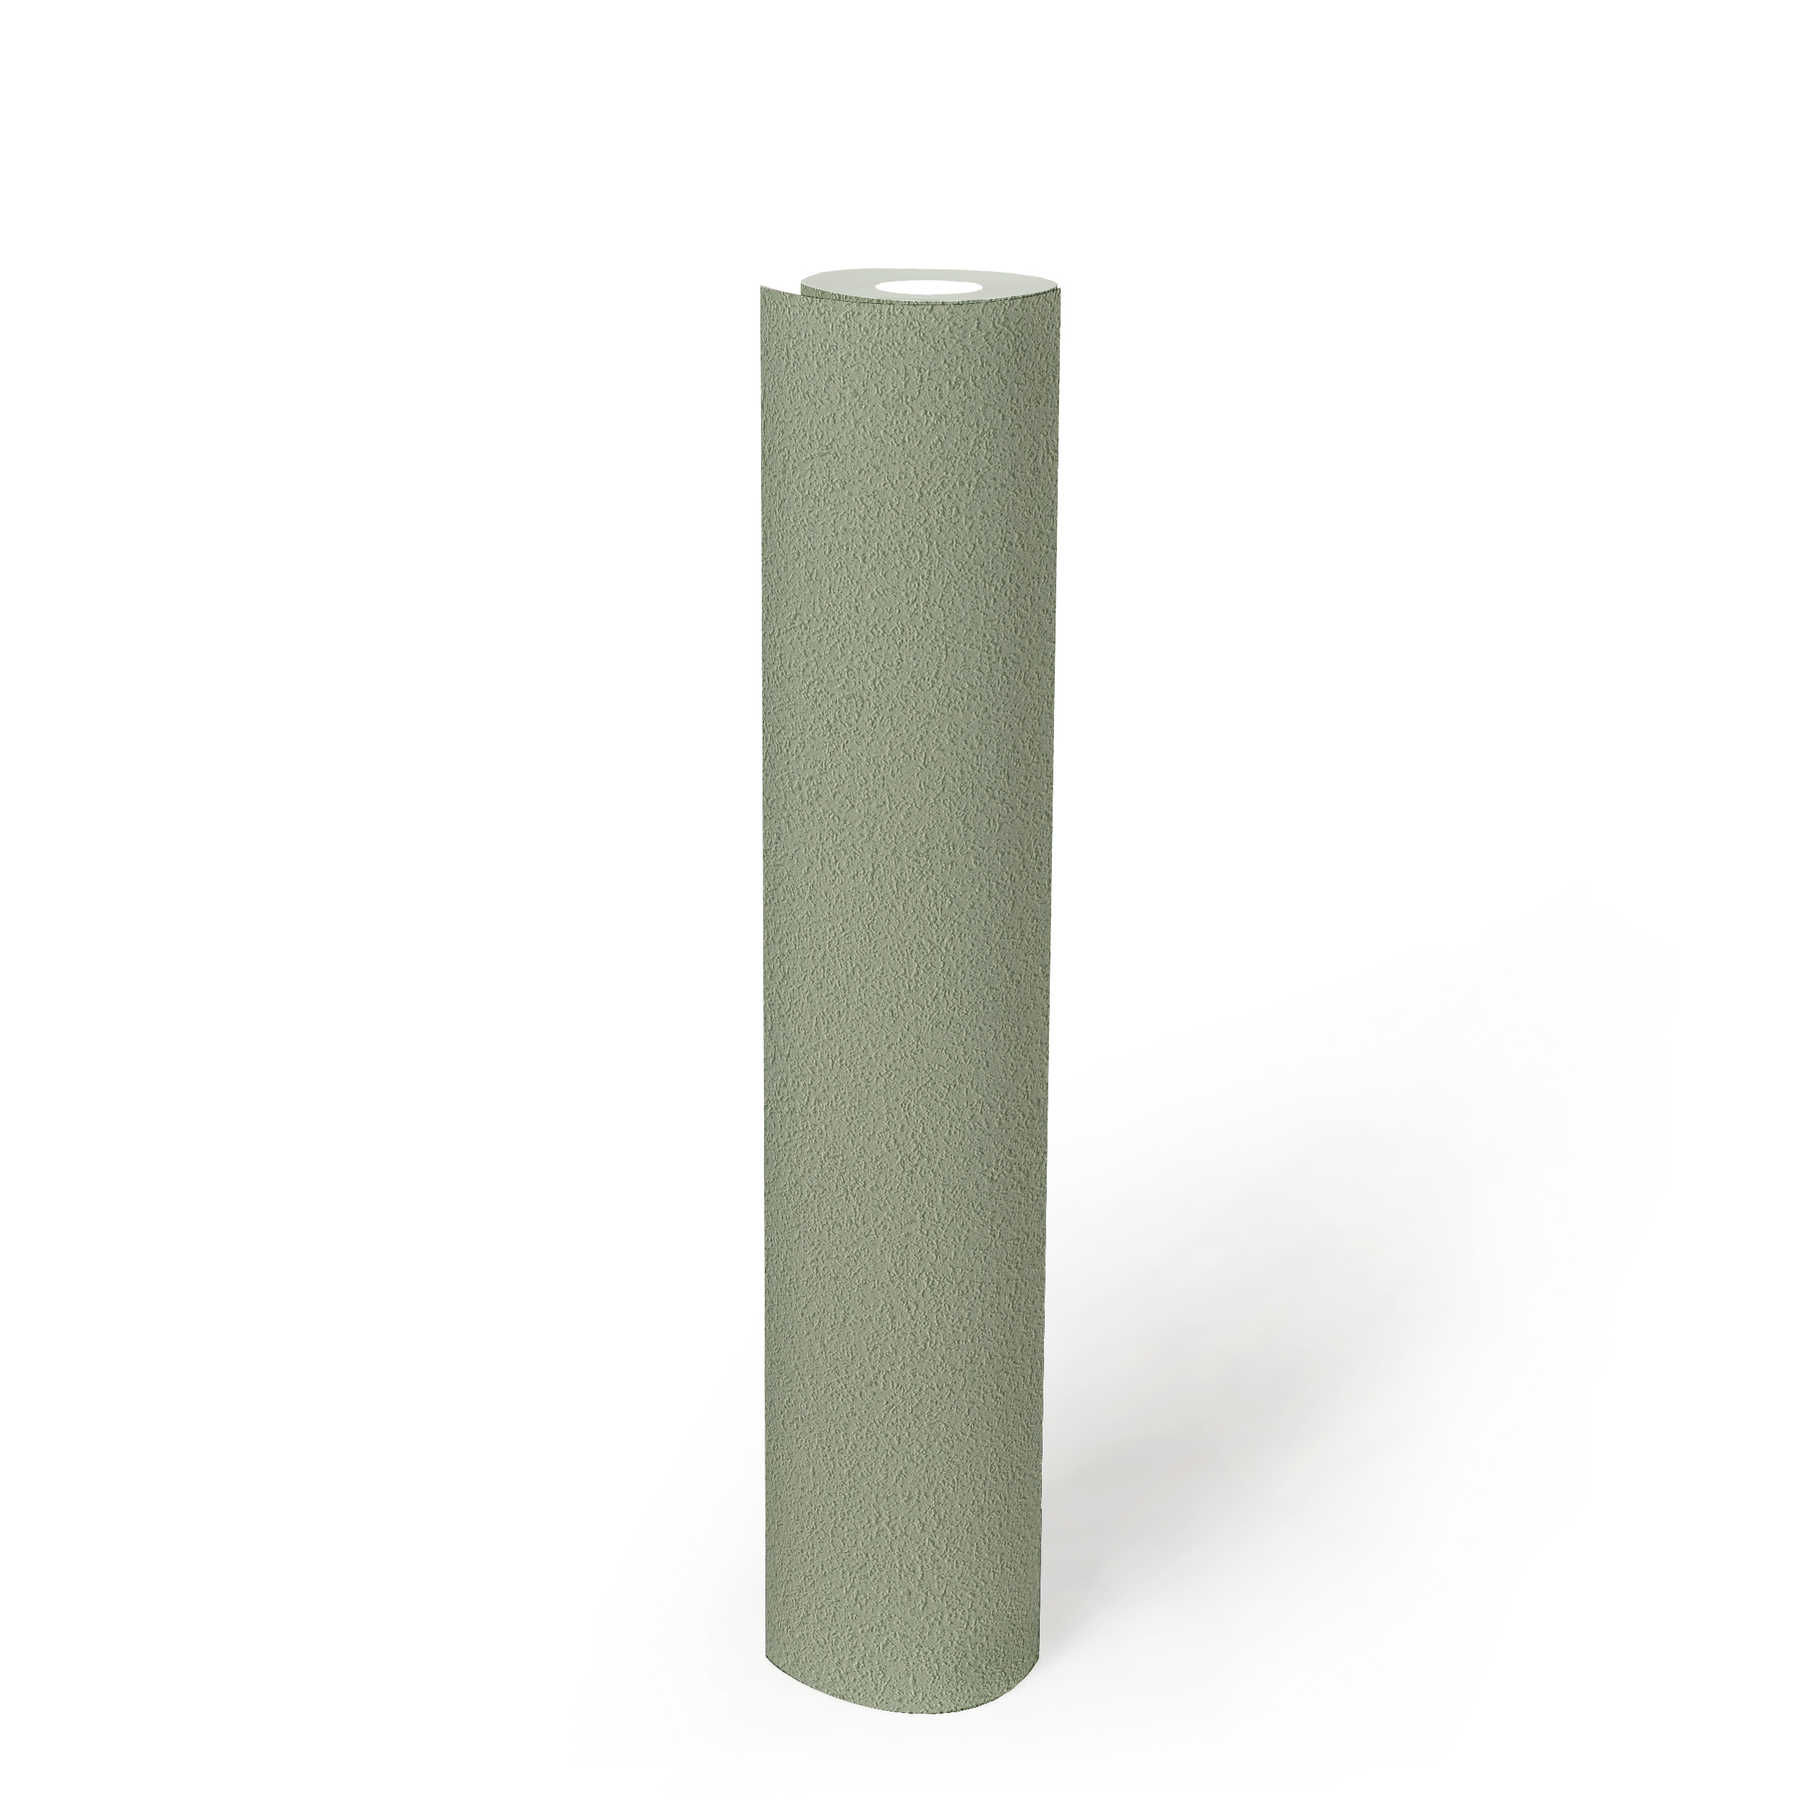             Papier peint uni avec structure de surface fine - vert
        